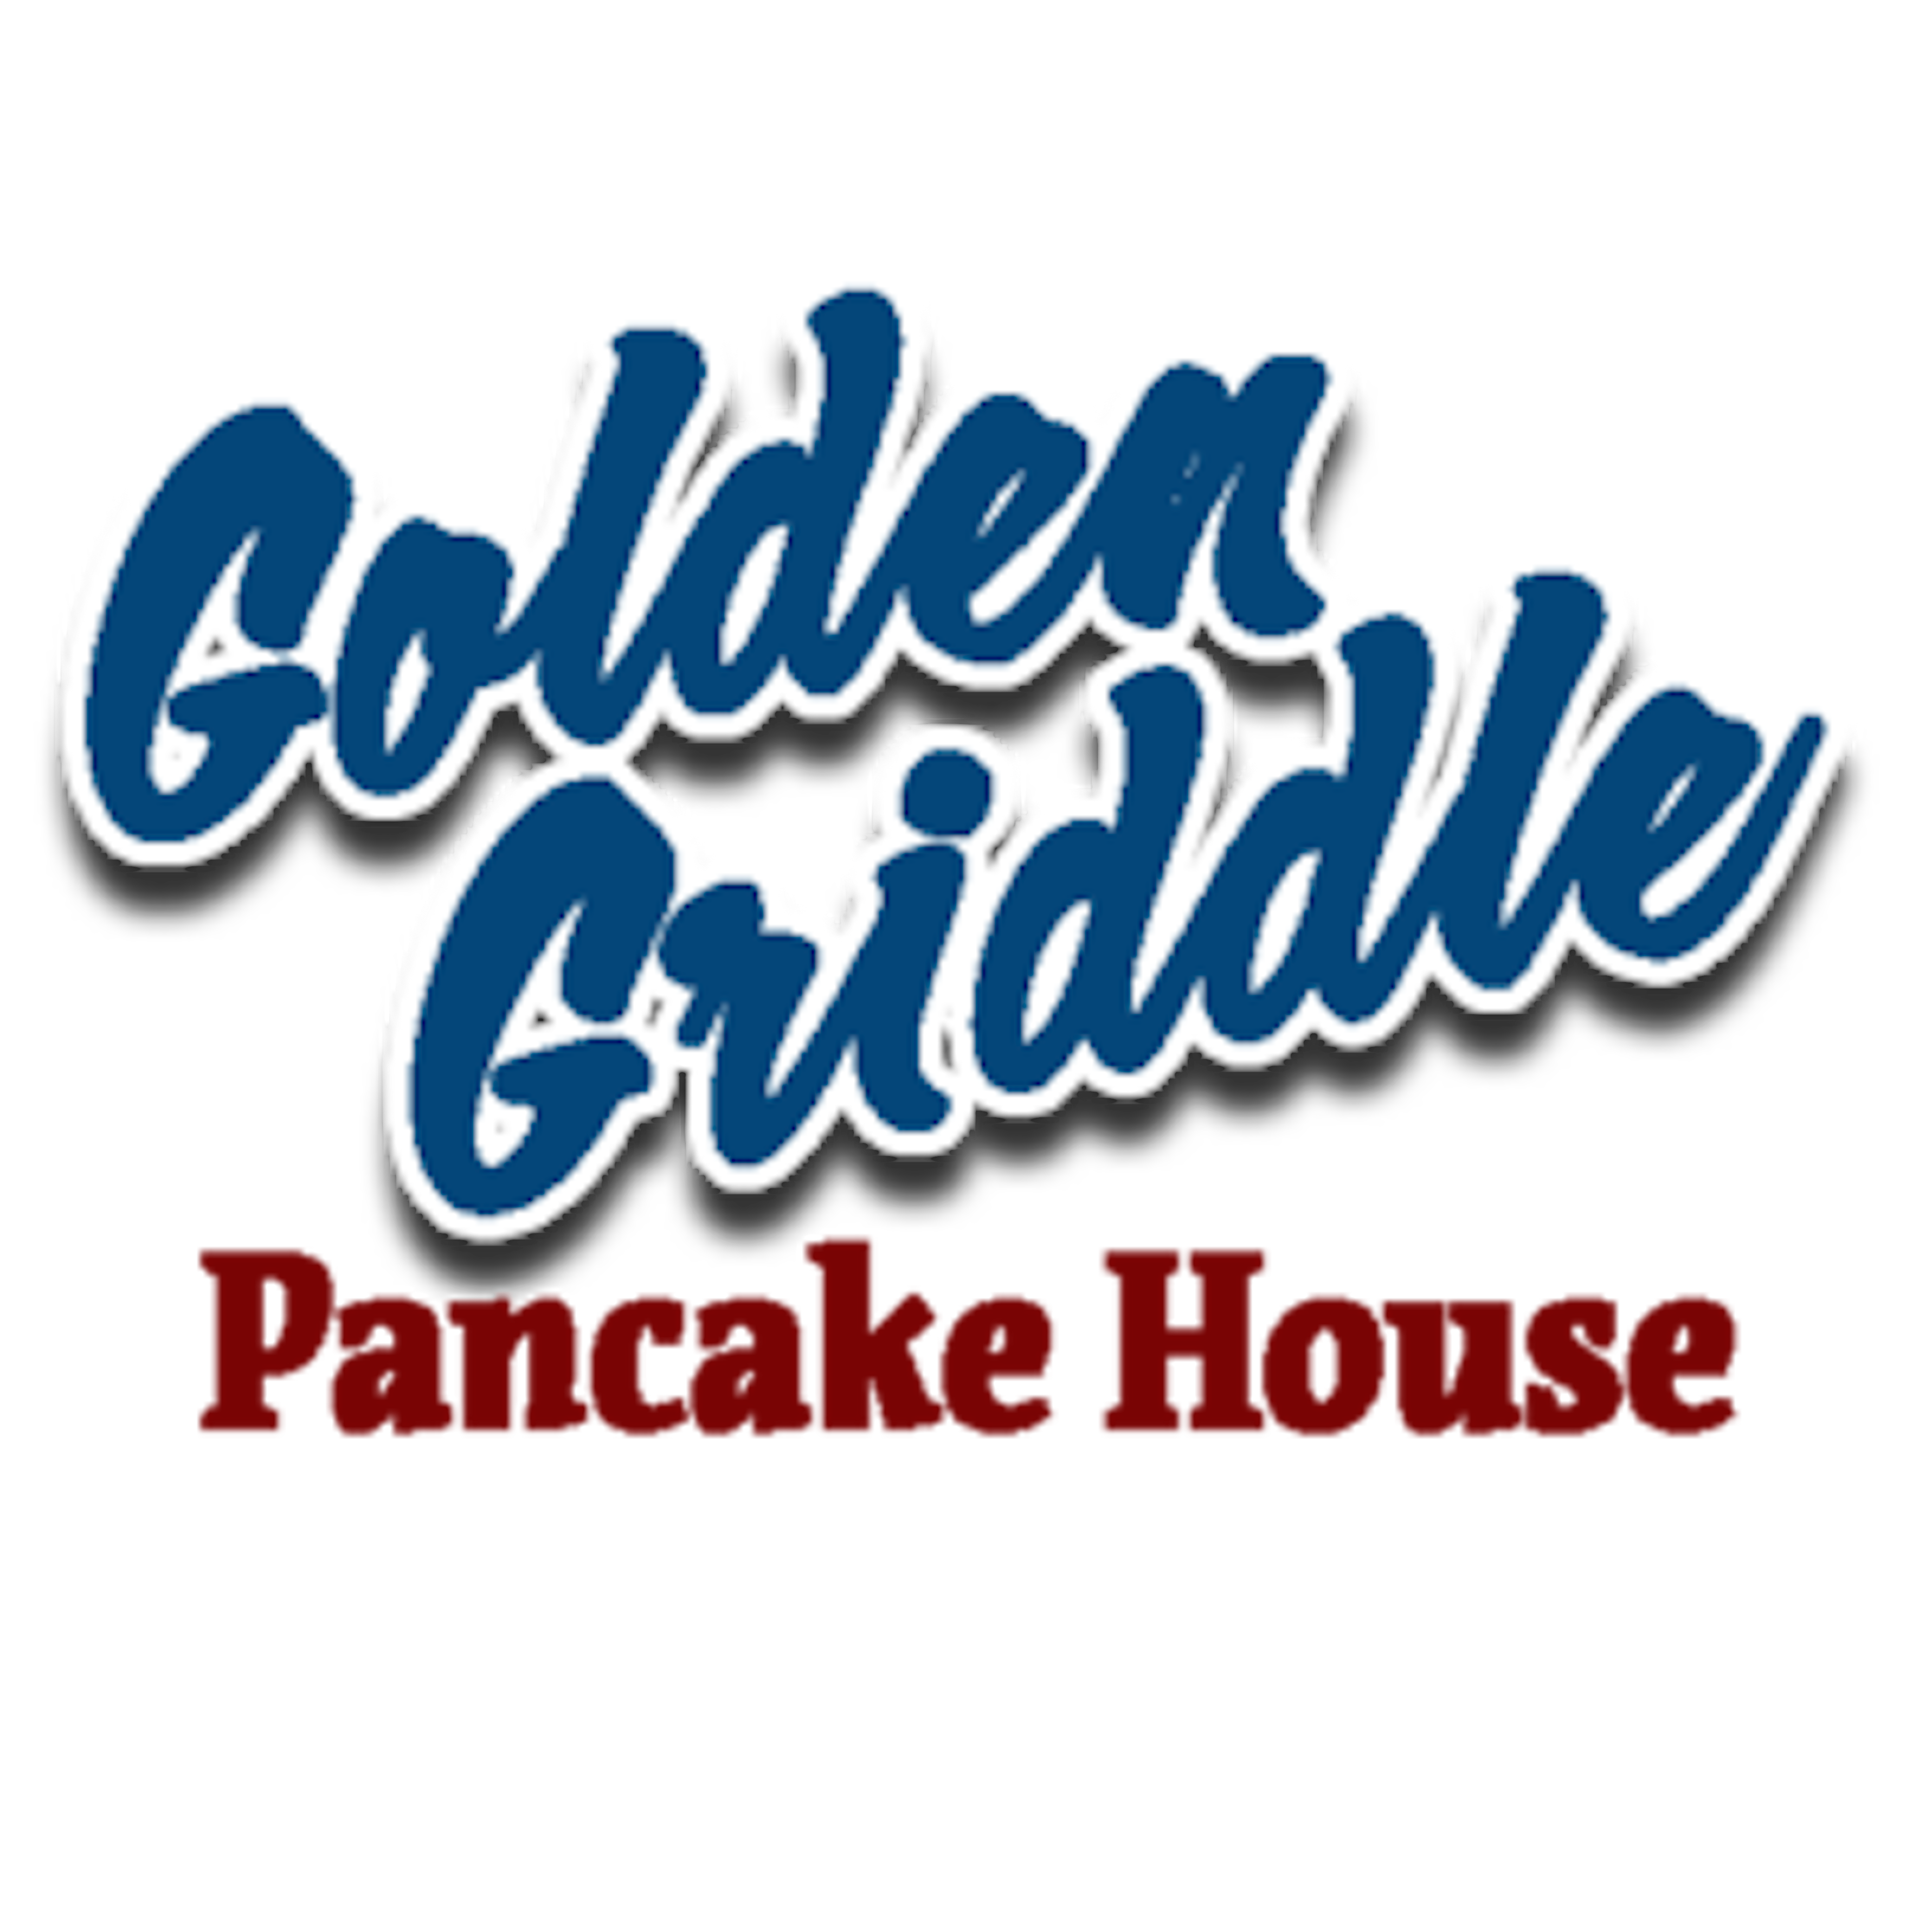 Golden Griddle Pancake House